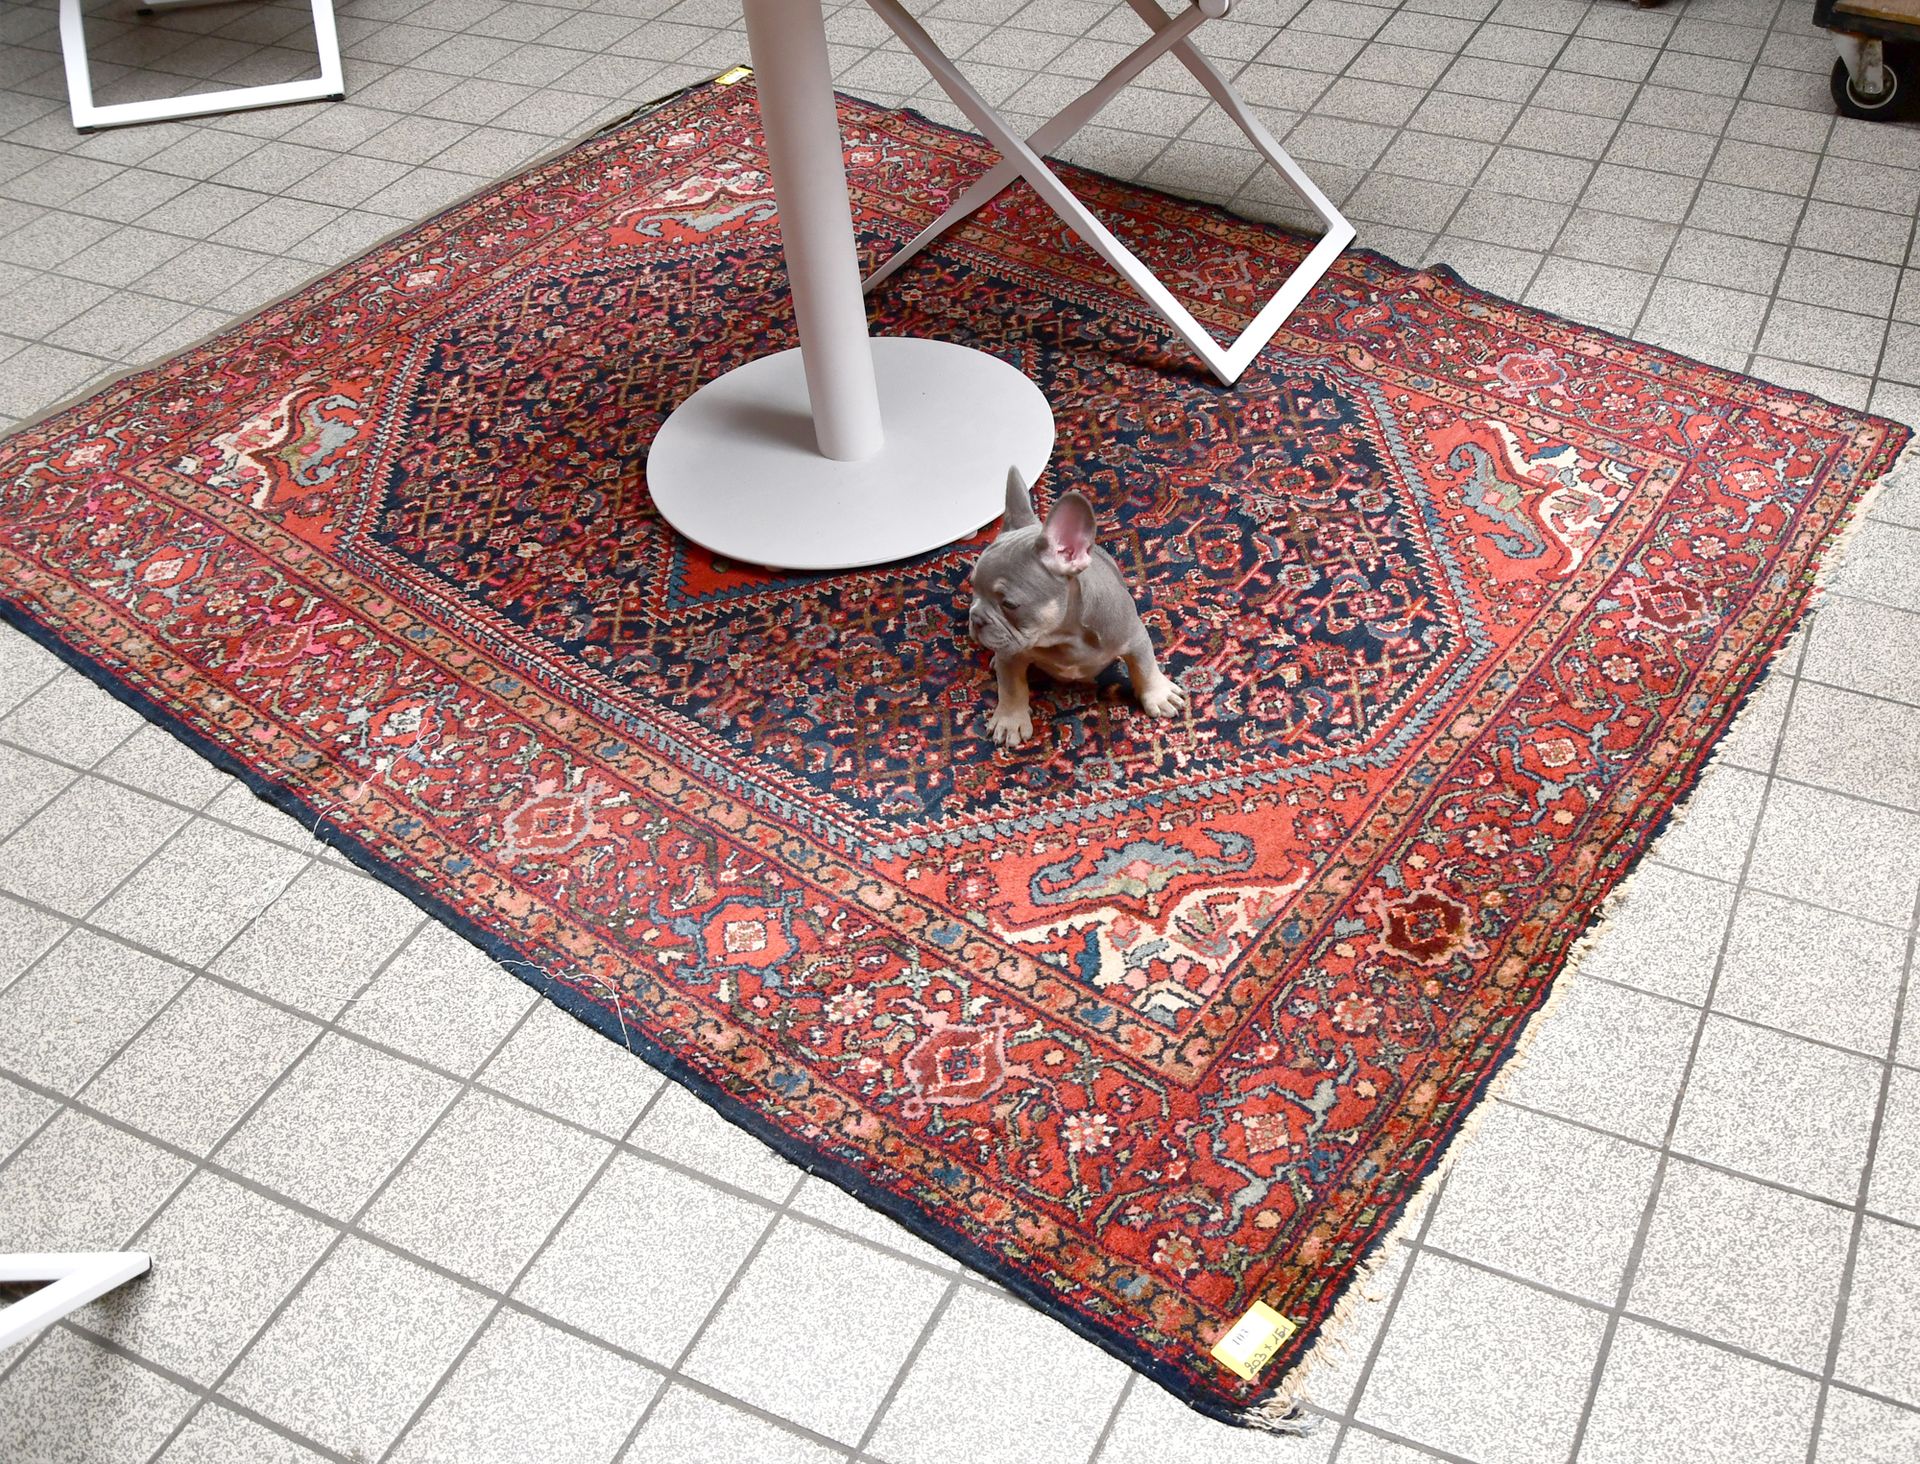 Null 地毯

伊朗古老的东方地毯。

尺寸：203厘米×151厘米。